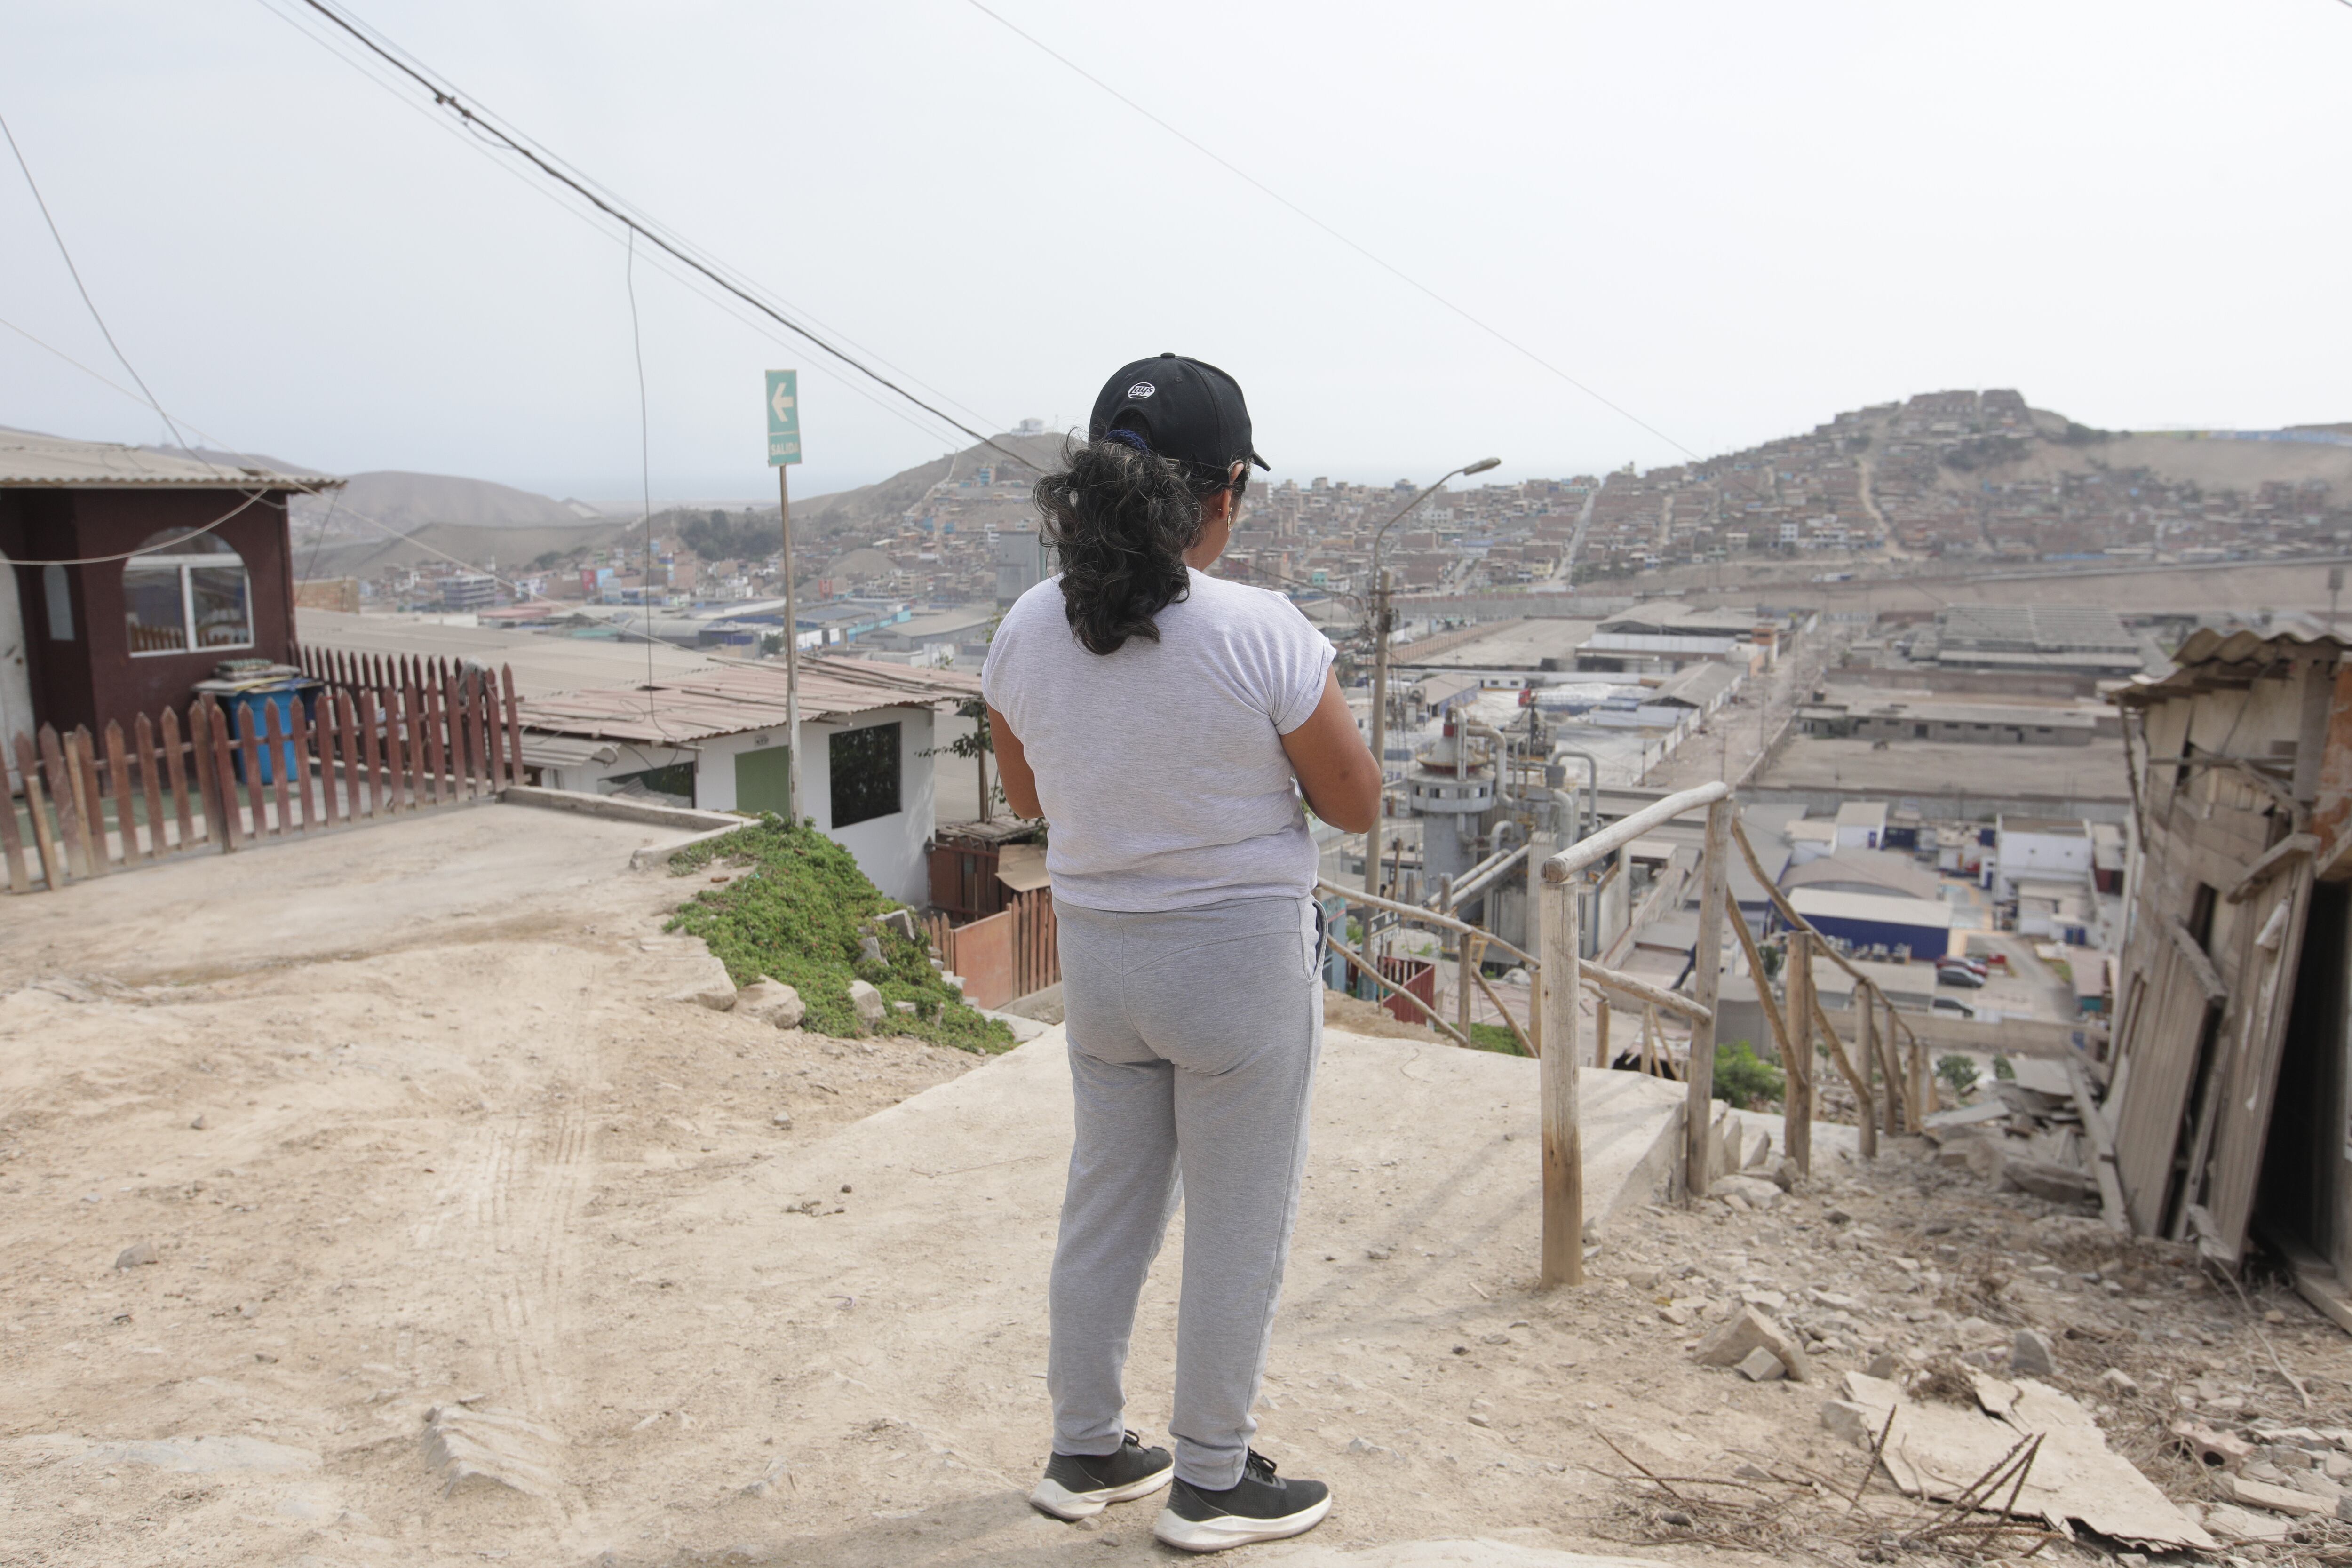 Manuela tiene dos hijas adolescentes contaminadas con plomo, en categoría I. Las dos estudian en el colegio Kumamoto, uno de los más afectados por la contaminación. Ella espera que la ordenanza concluya con el cierre de las fábricas que vienen afectando la salud de su familia y vecinos por años.